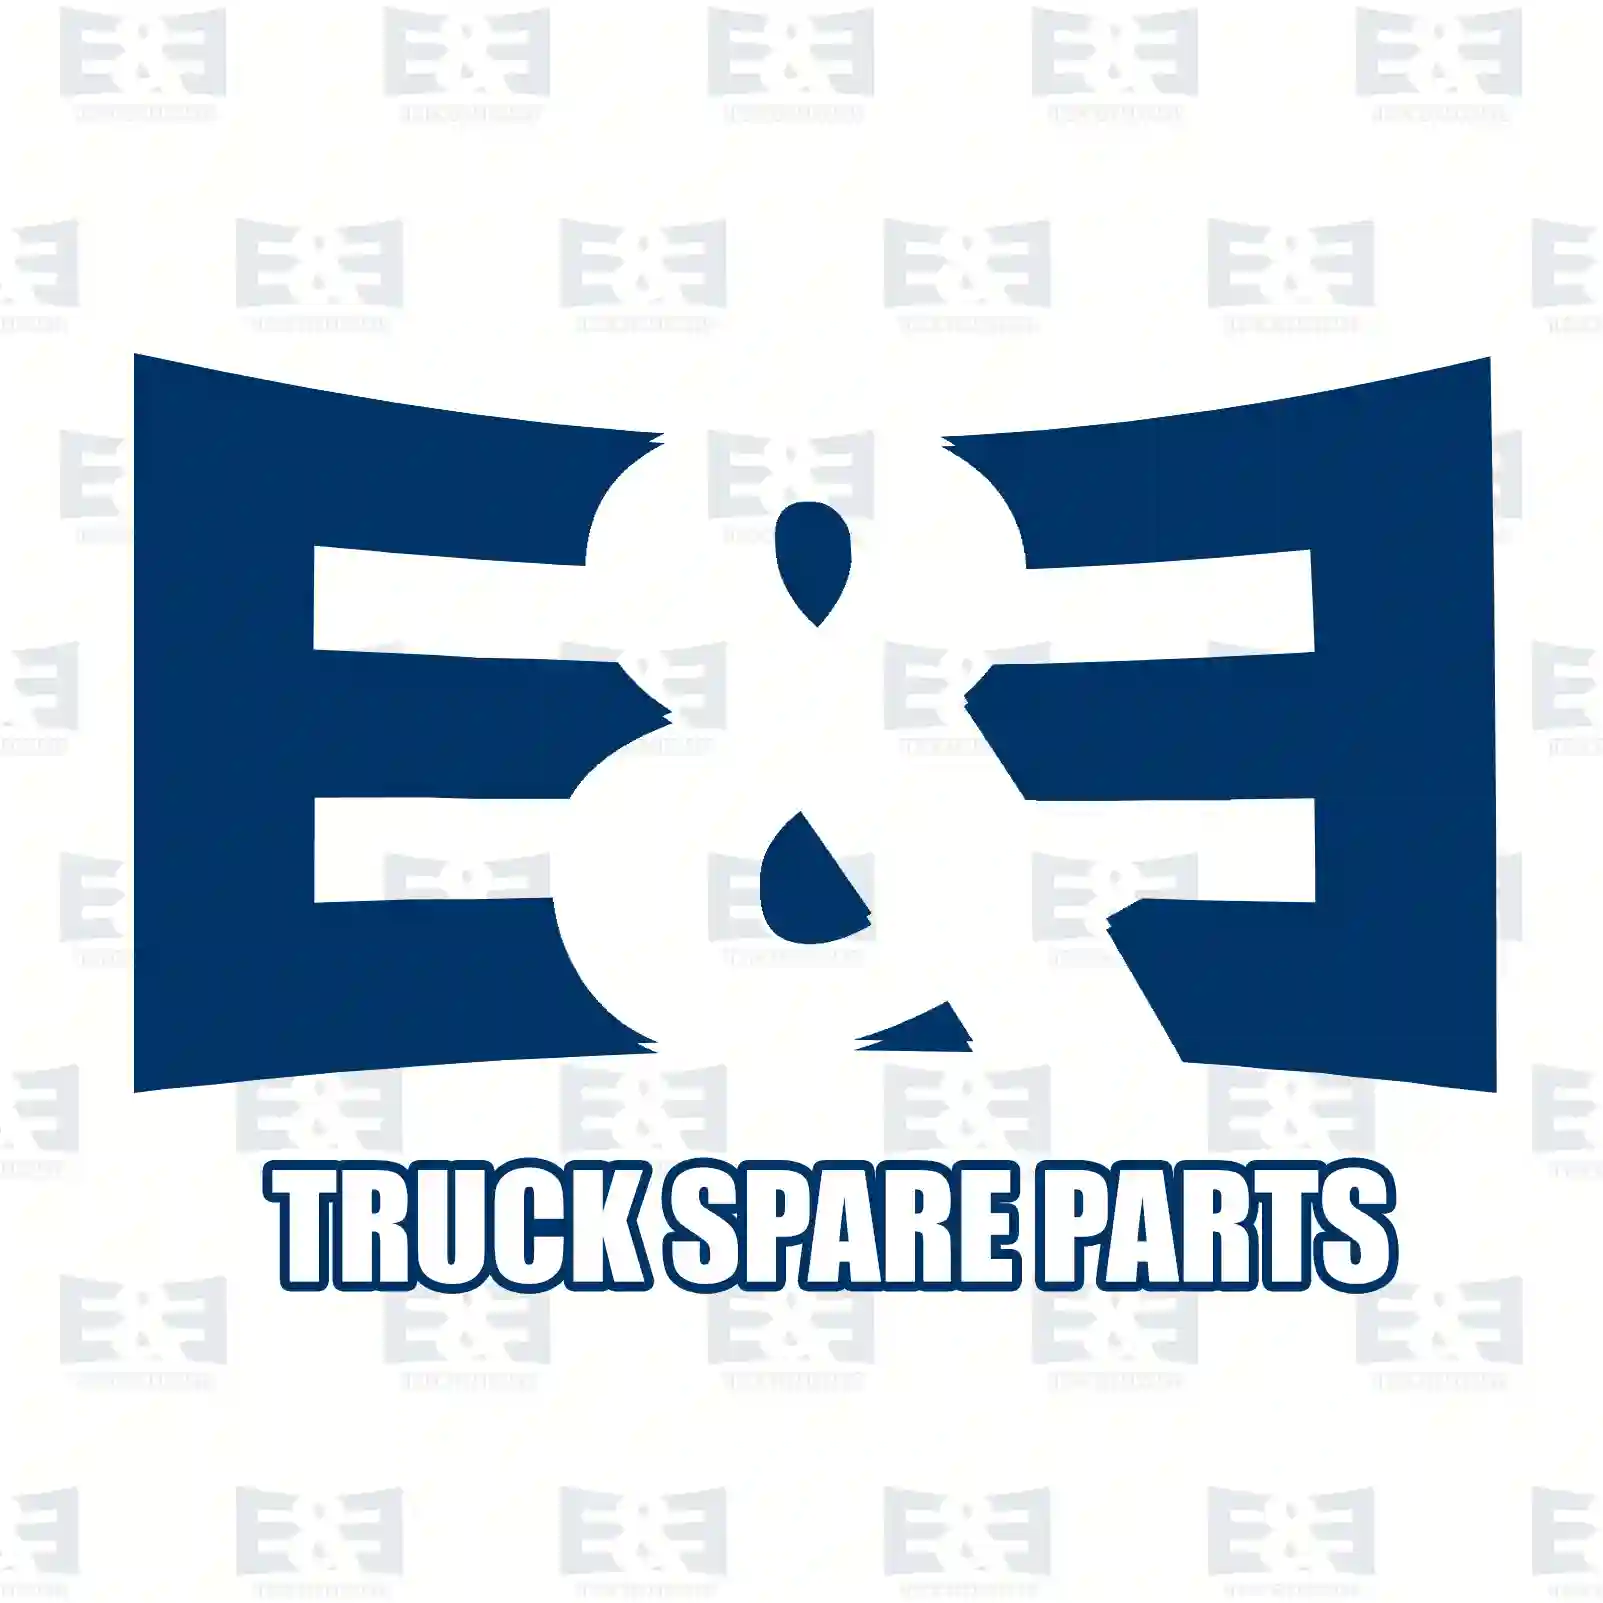 Ball joint, right, 2E2270747, 504127787 ||  2E2270747 E&E Truck Spare Parts | Truck Spare Parts, Auotomotive Spare Parts Ball joint, right, 2E2270747, 504127787 ||  2E2270747 E&E Truck Spare Parts | Truck Spare Parts, Auotomotive Spare Parts